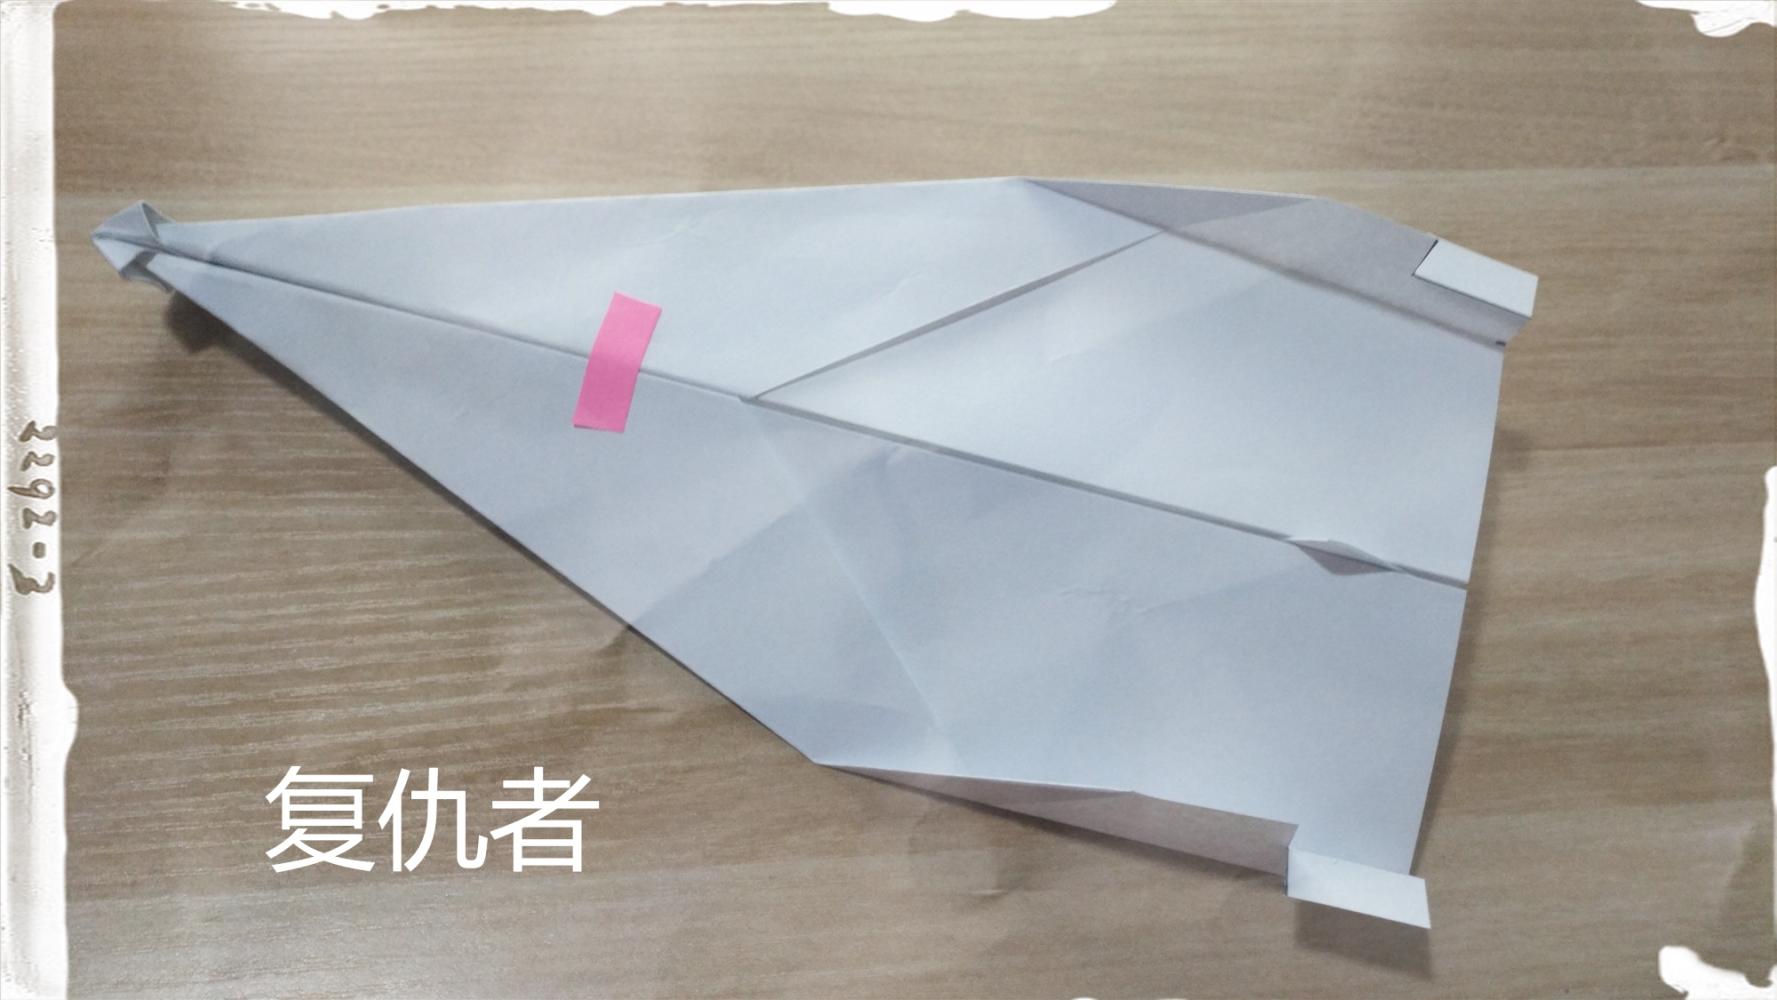 [纸飞机辅助]纸飞机辅助破解版